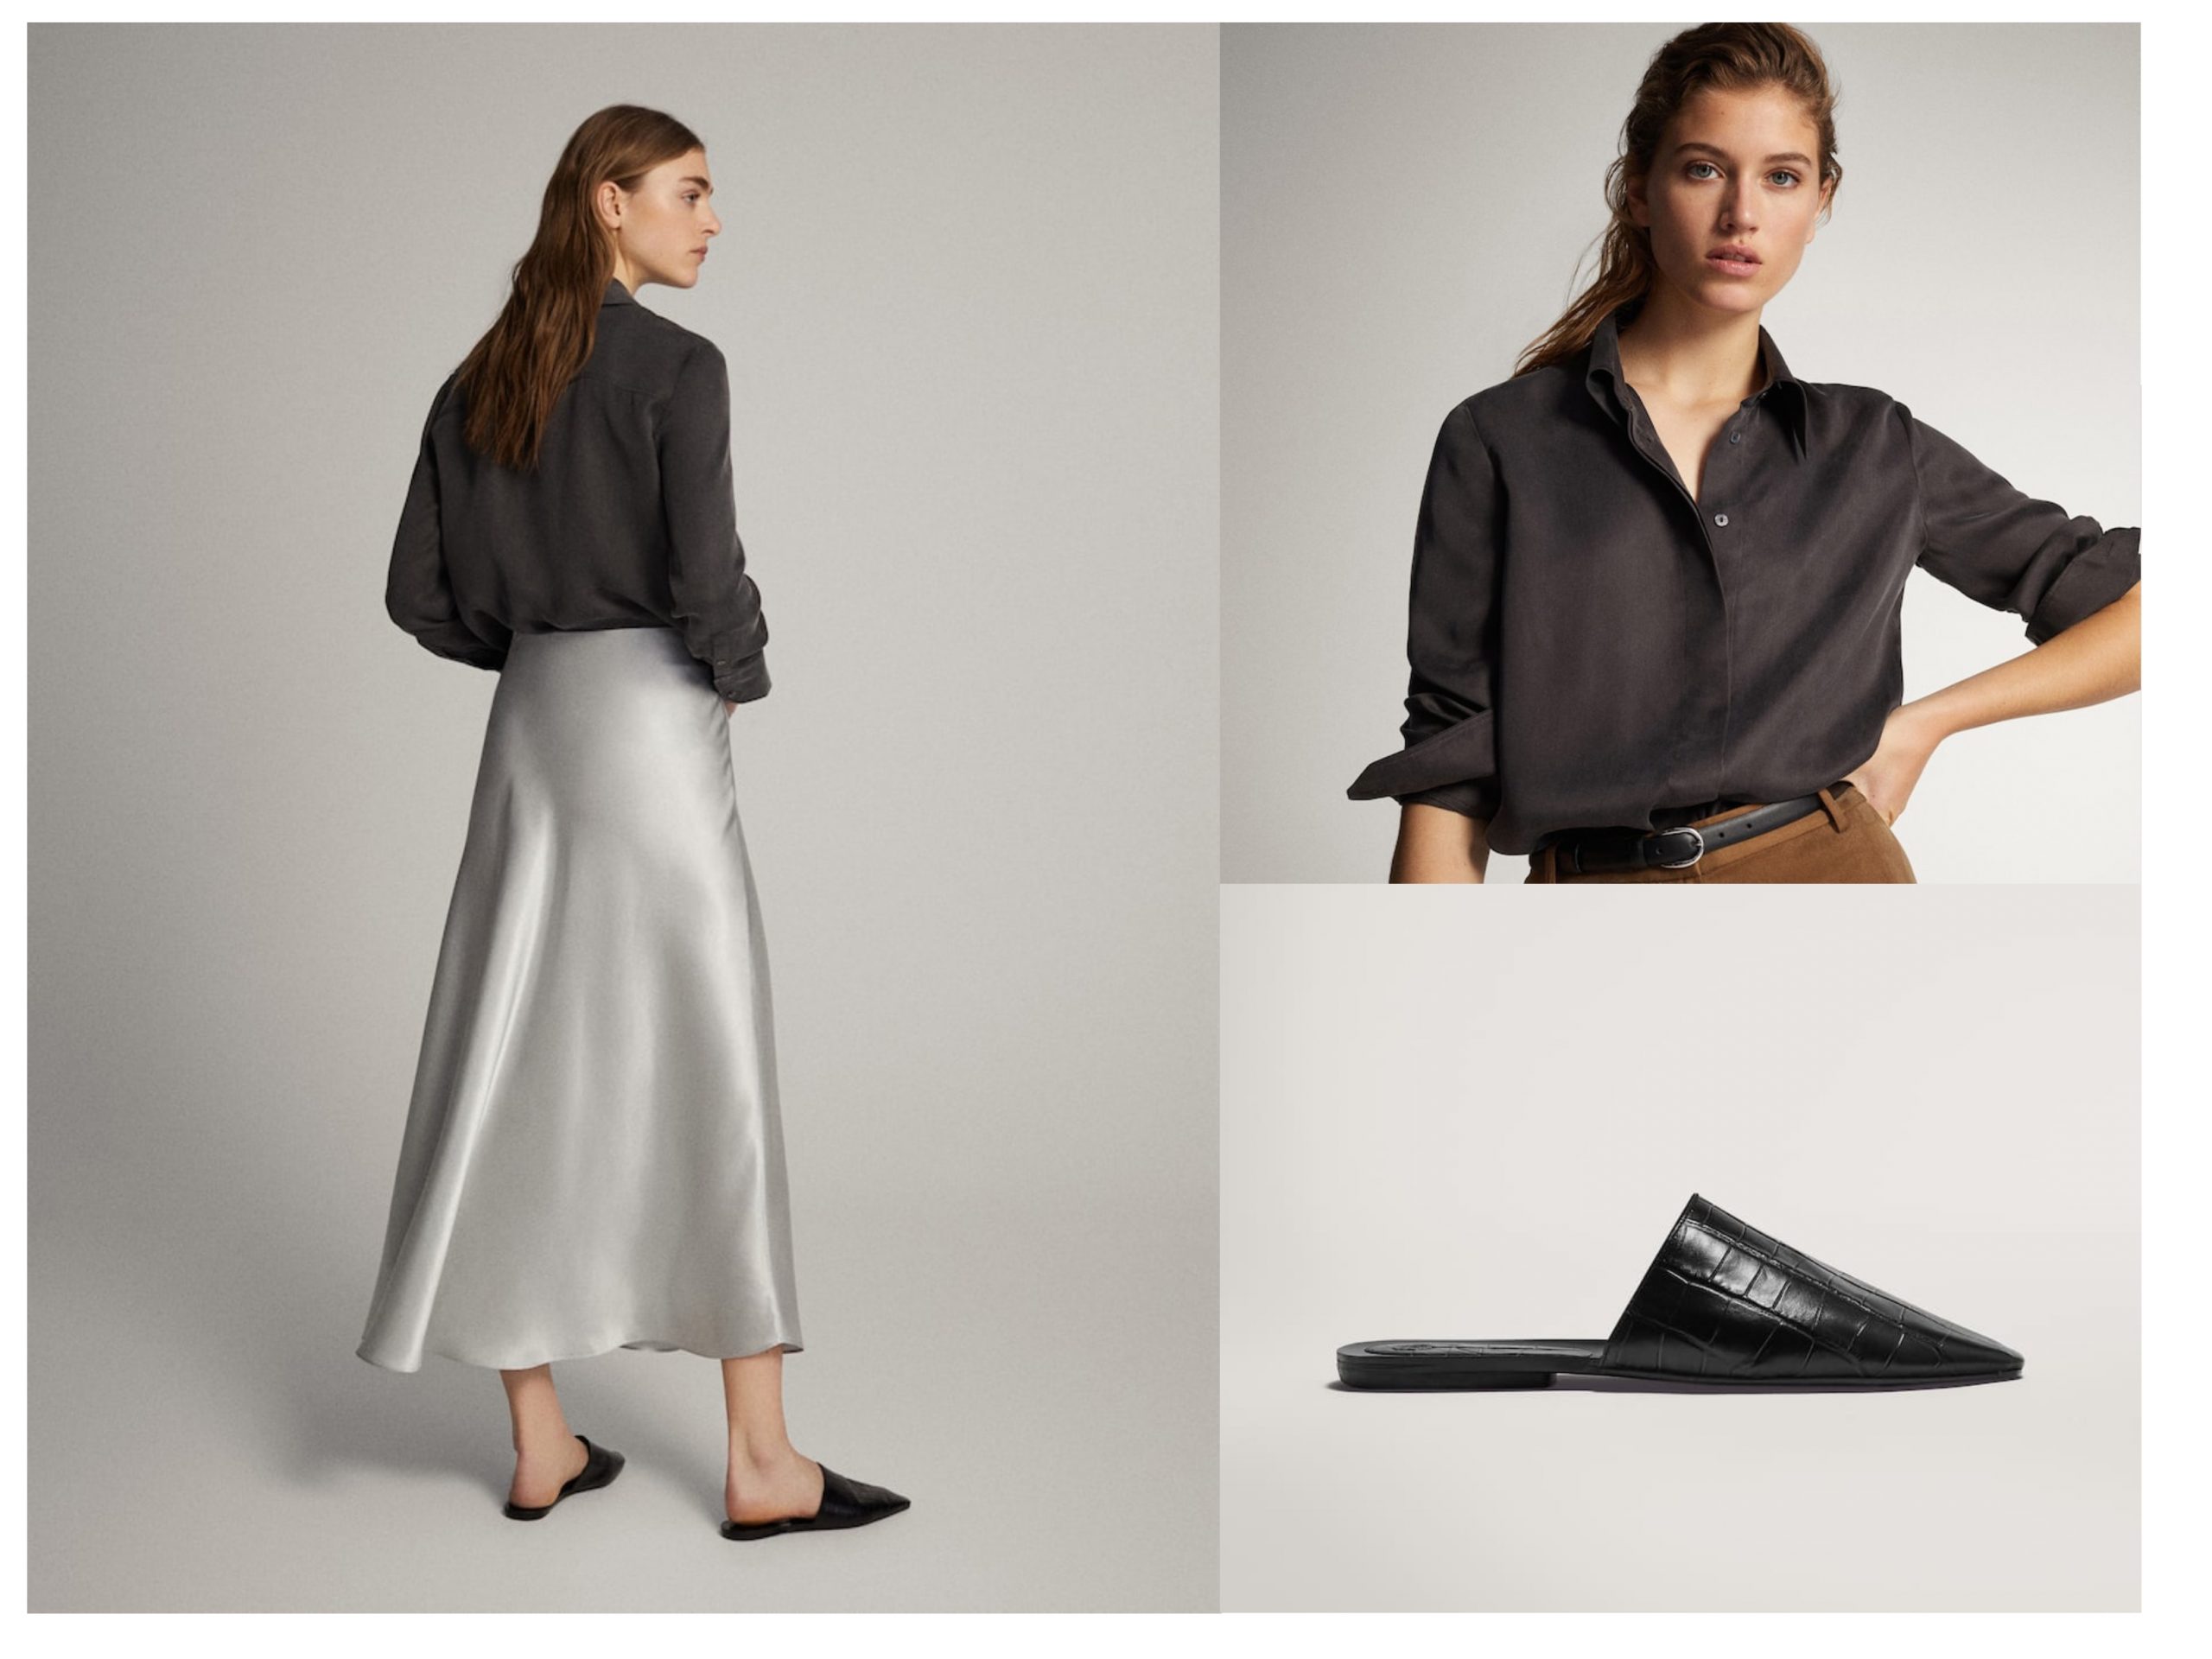 Total look de Massimo Dutti con productos rebajados, cuenta con sandalias planas, una falda color plateado y una camisa negra abotonada estilo seda.